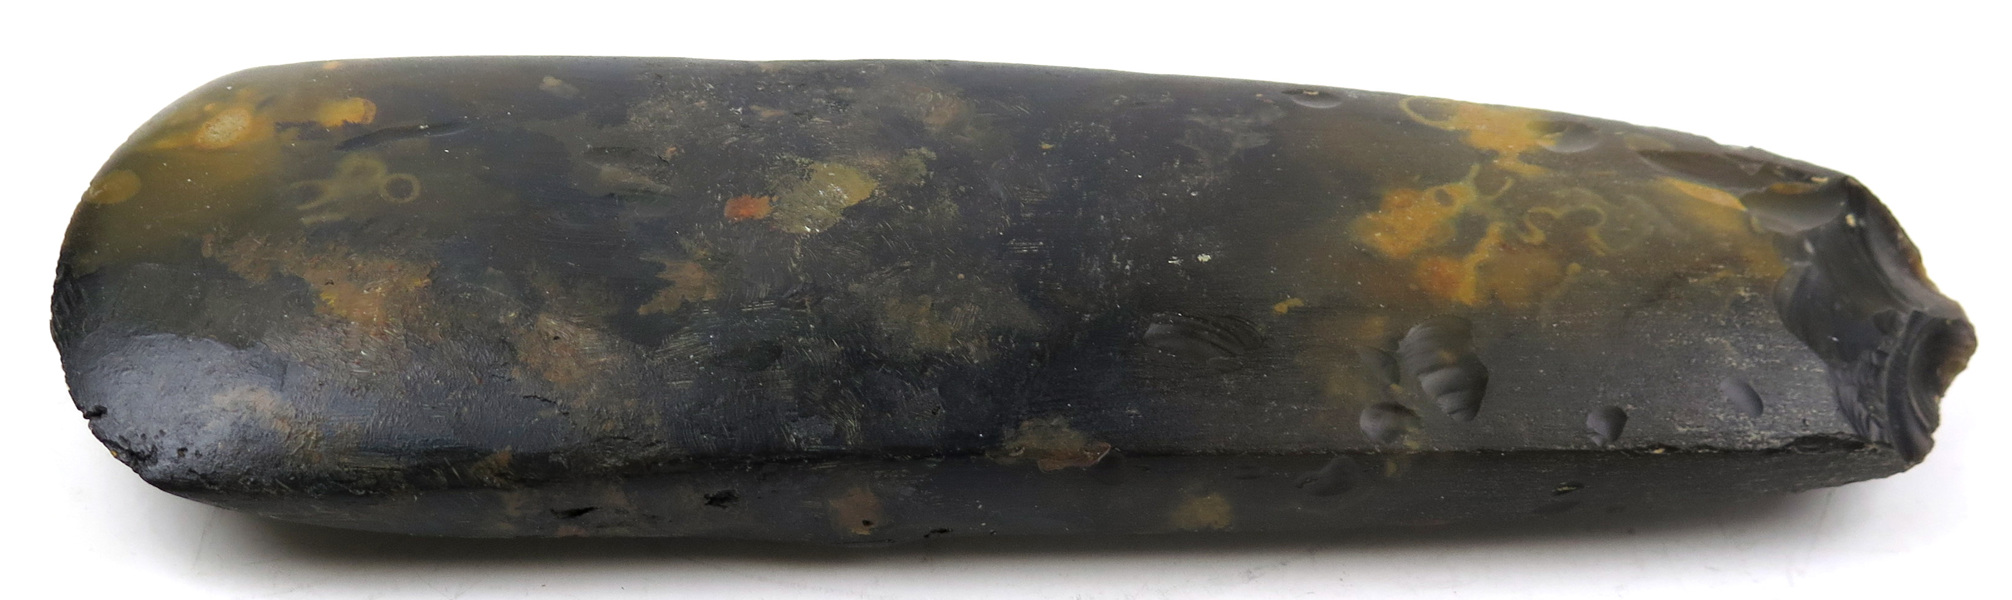 Stenyxa, flinta, lösfynd från yngre stenålder (4000-1700 fKr),_13572a_8d99245eaba08d1_lg.jpeg